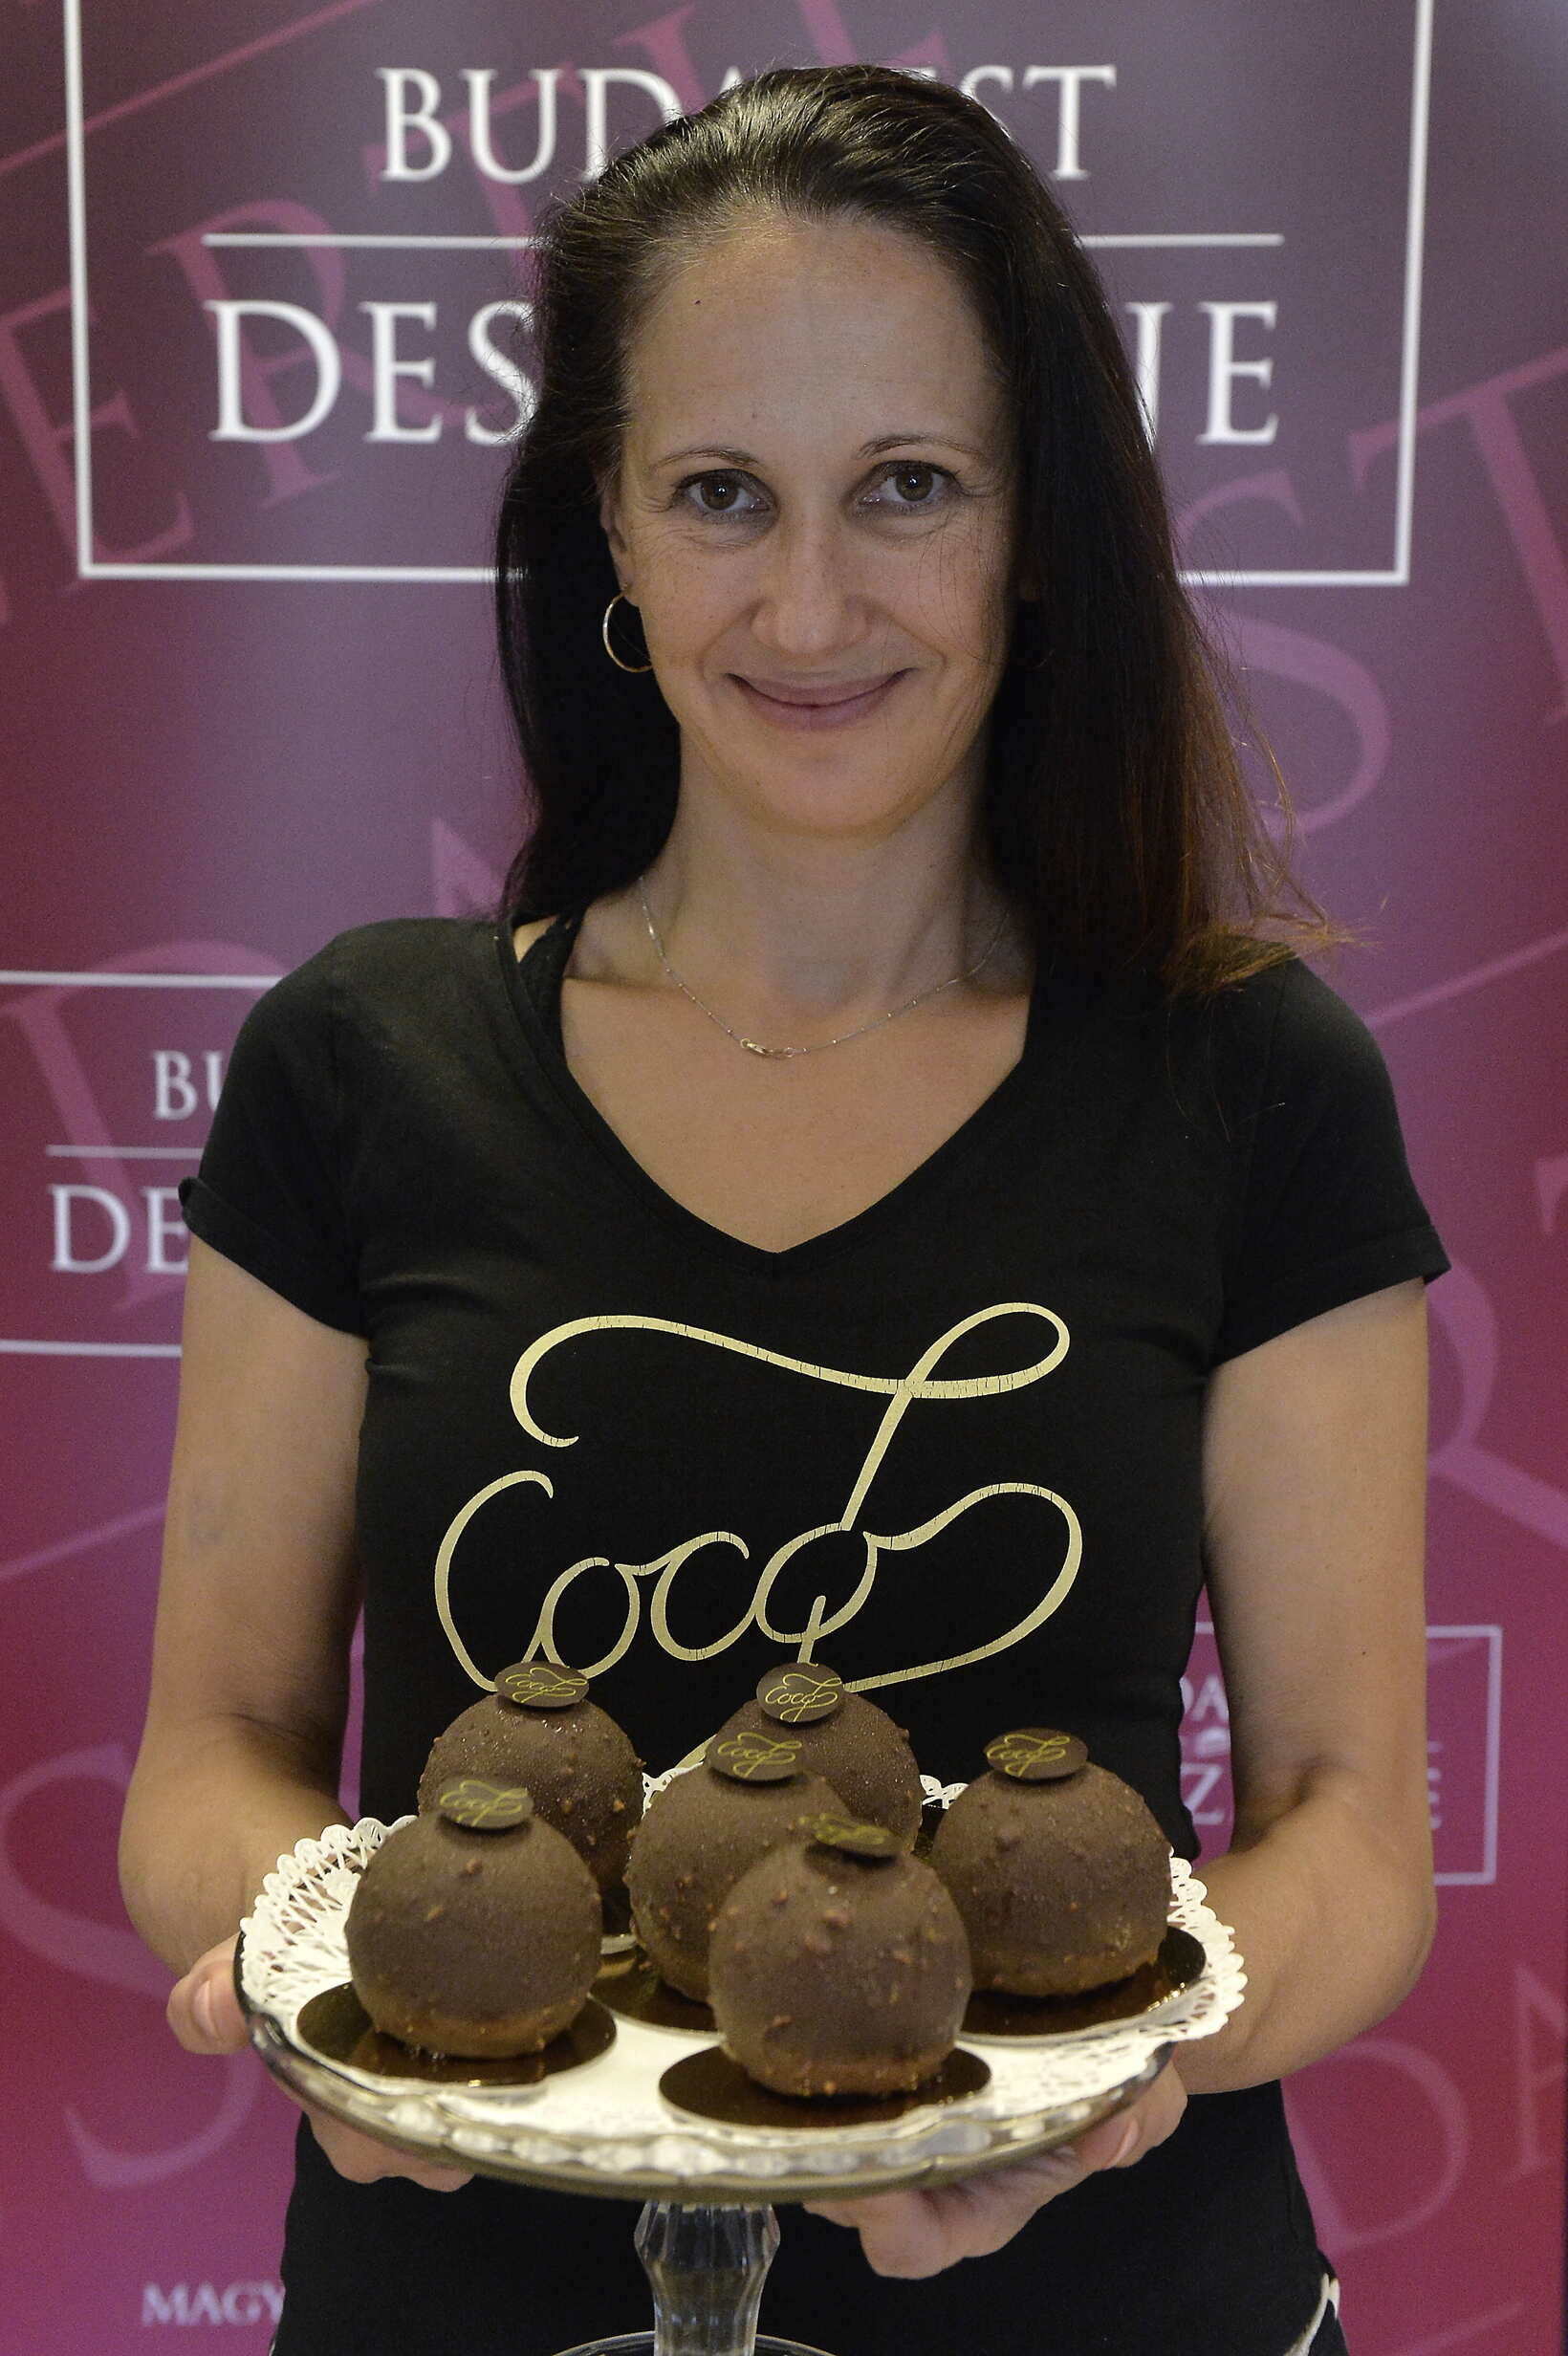 布達佩斯甜點 Coco7-Chocolate-Shop-cake-food